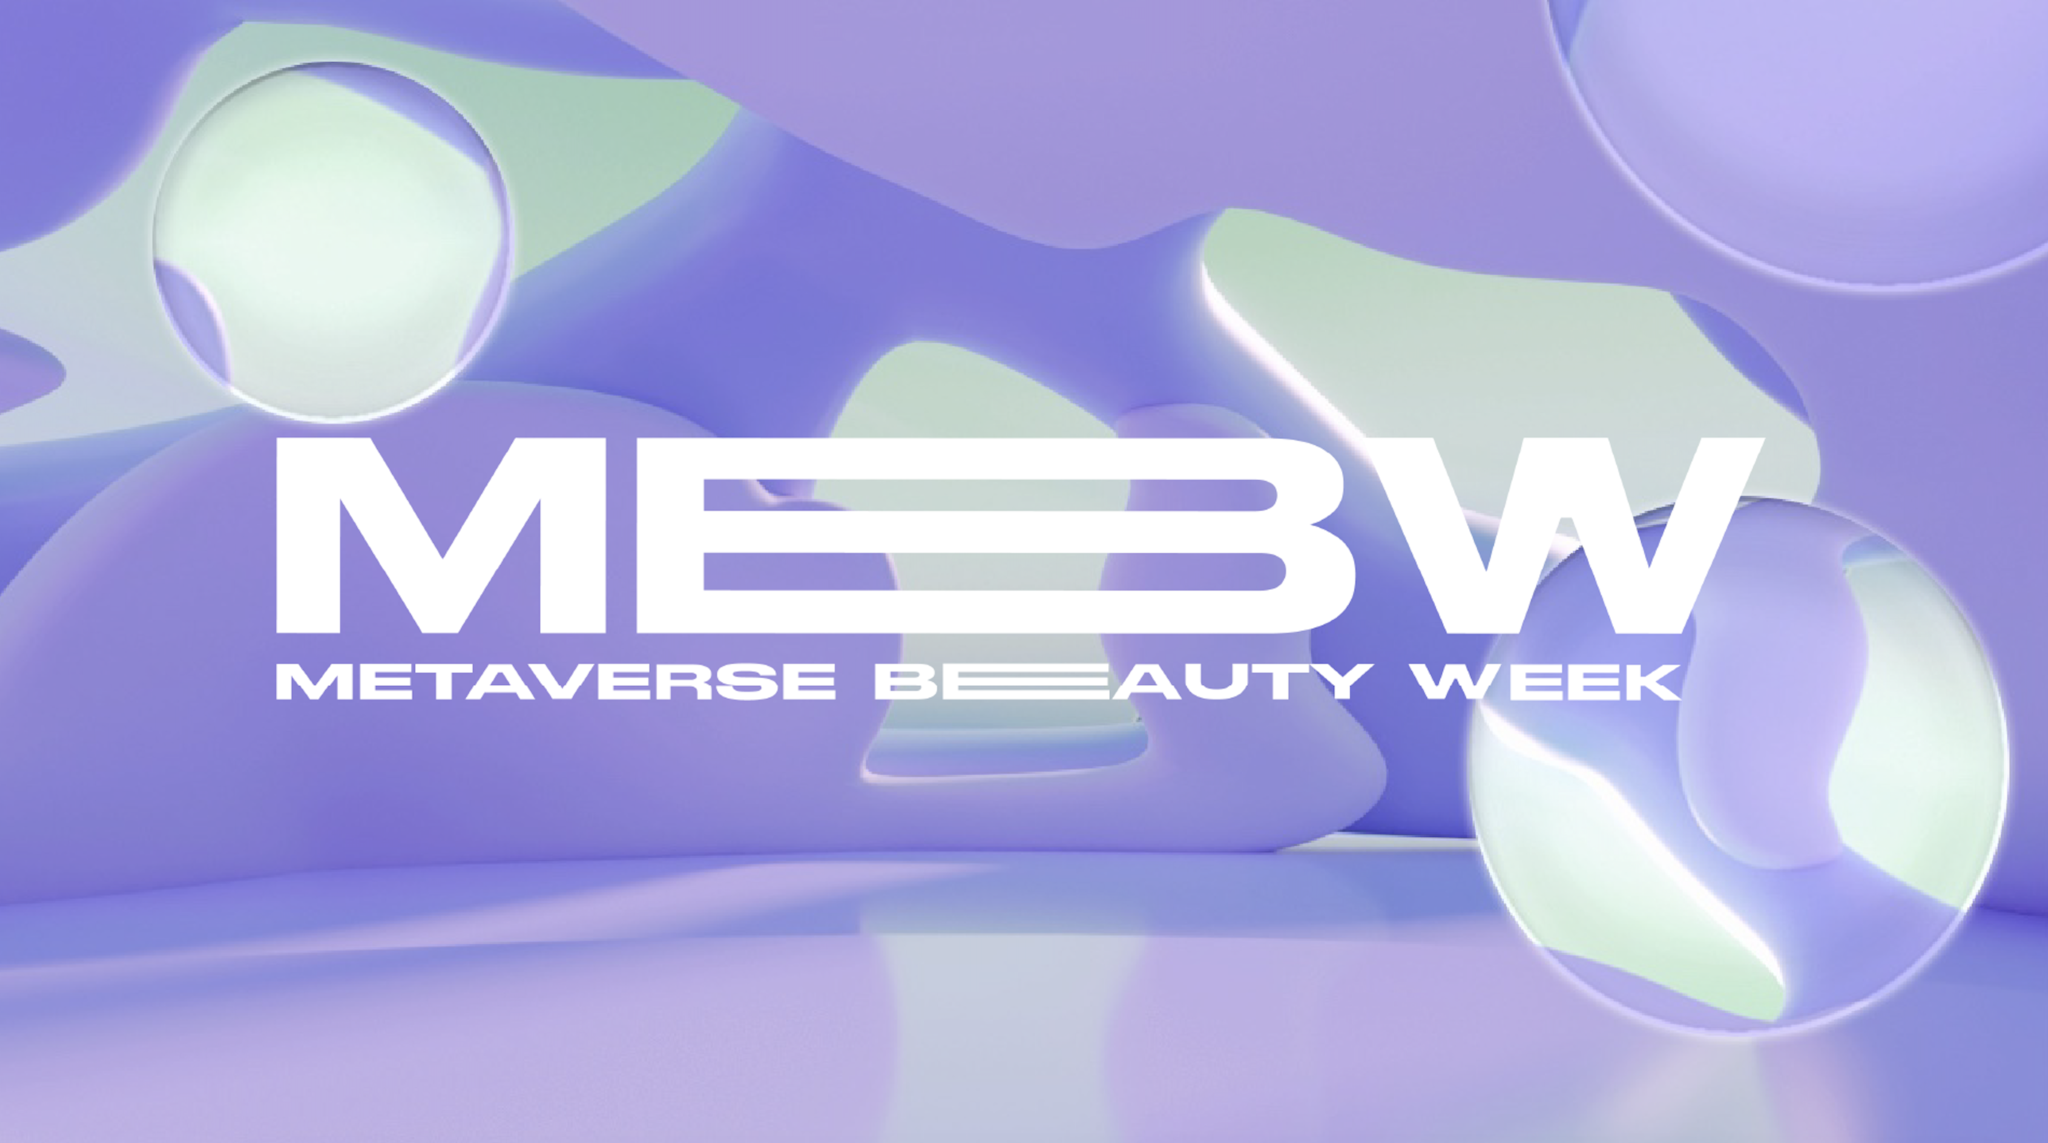 digital poster of the metaverse beauty week